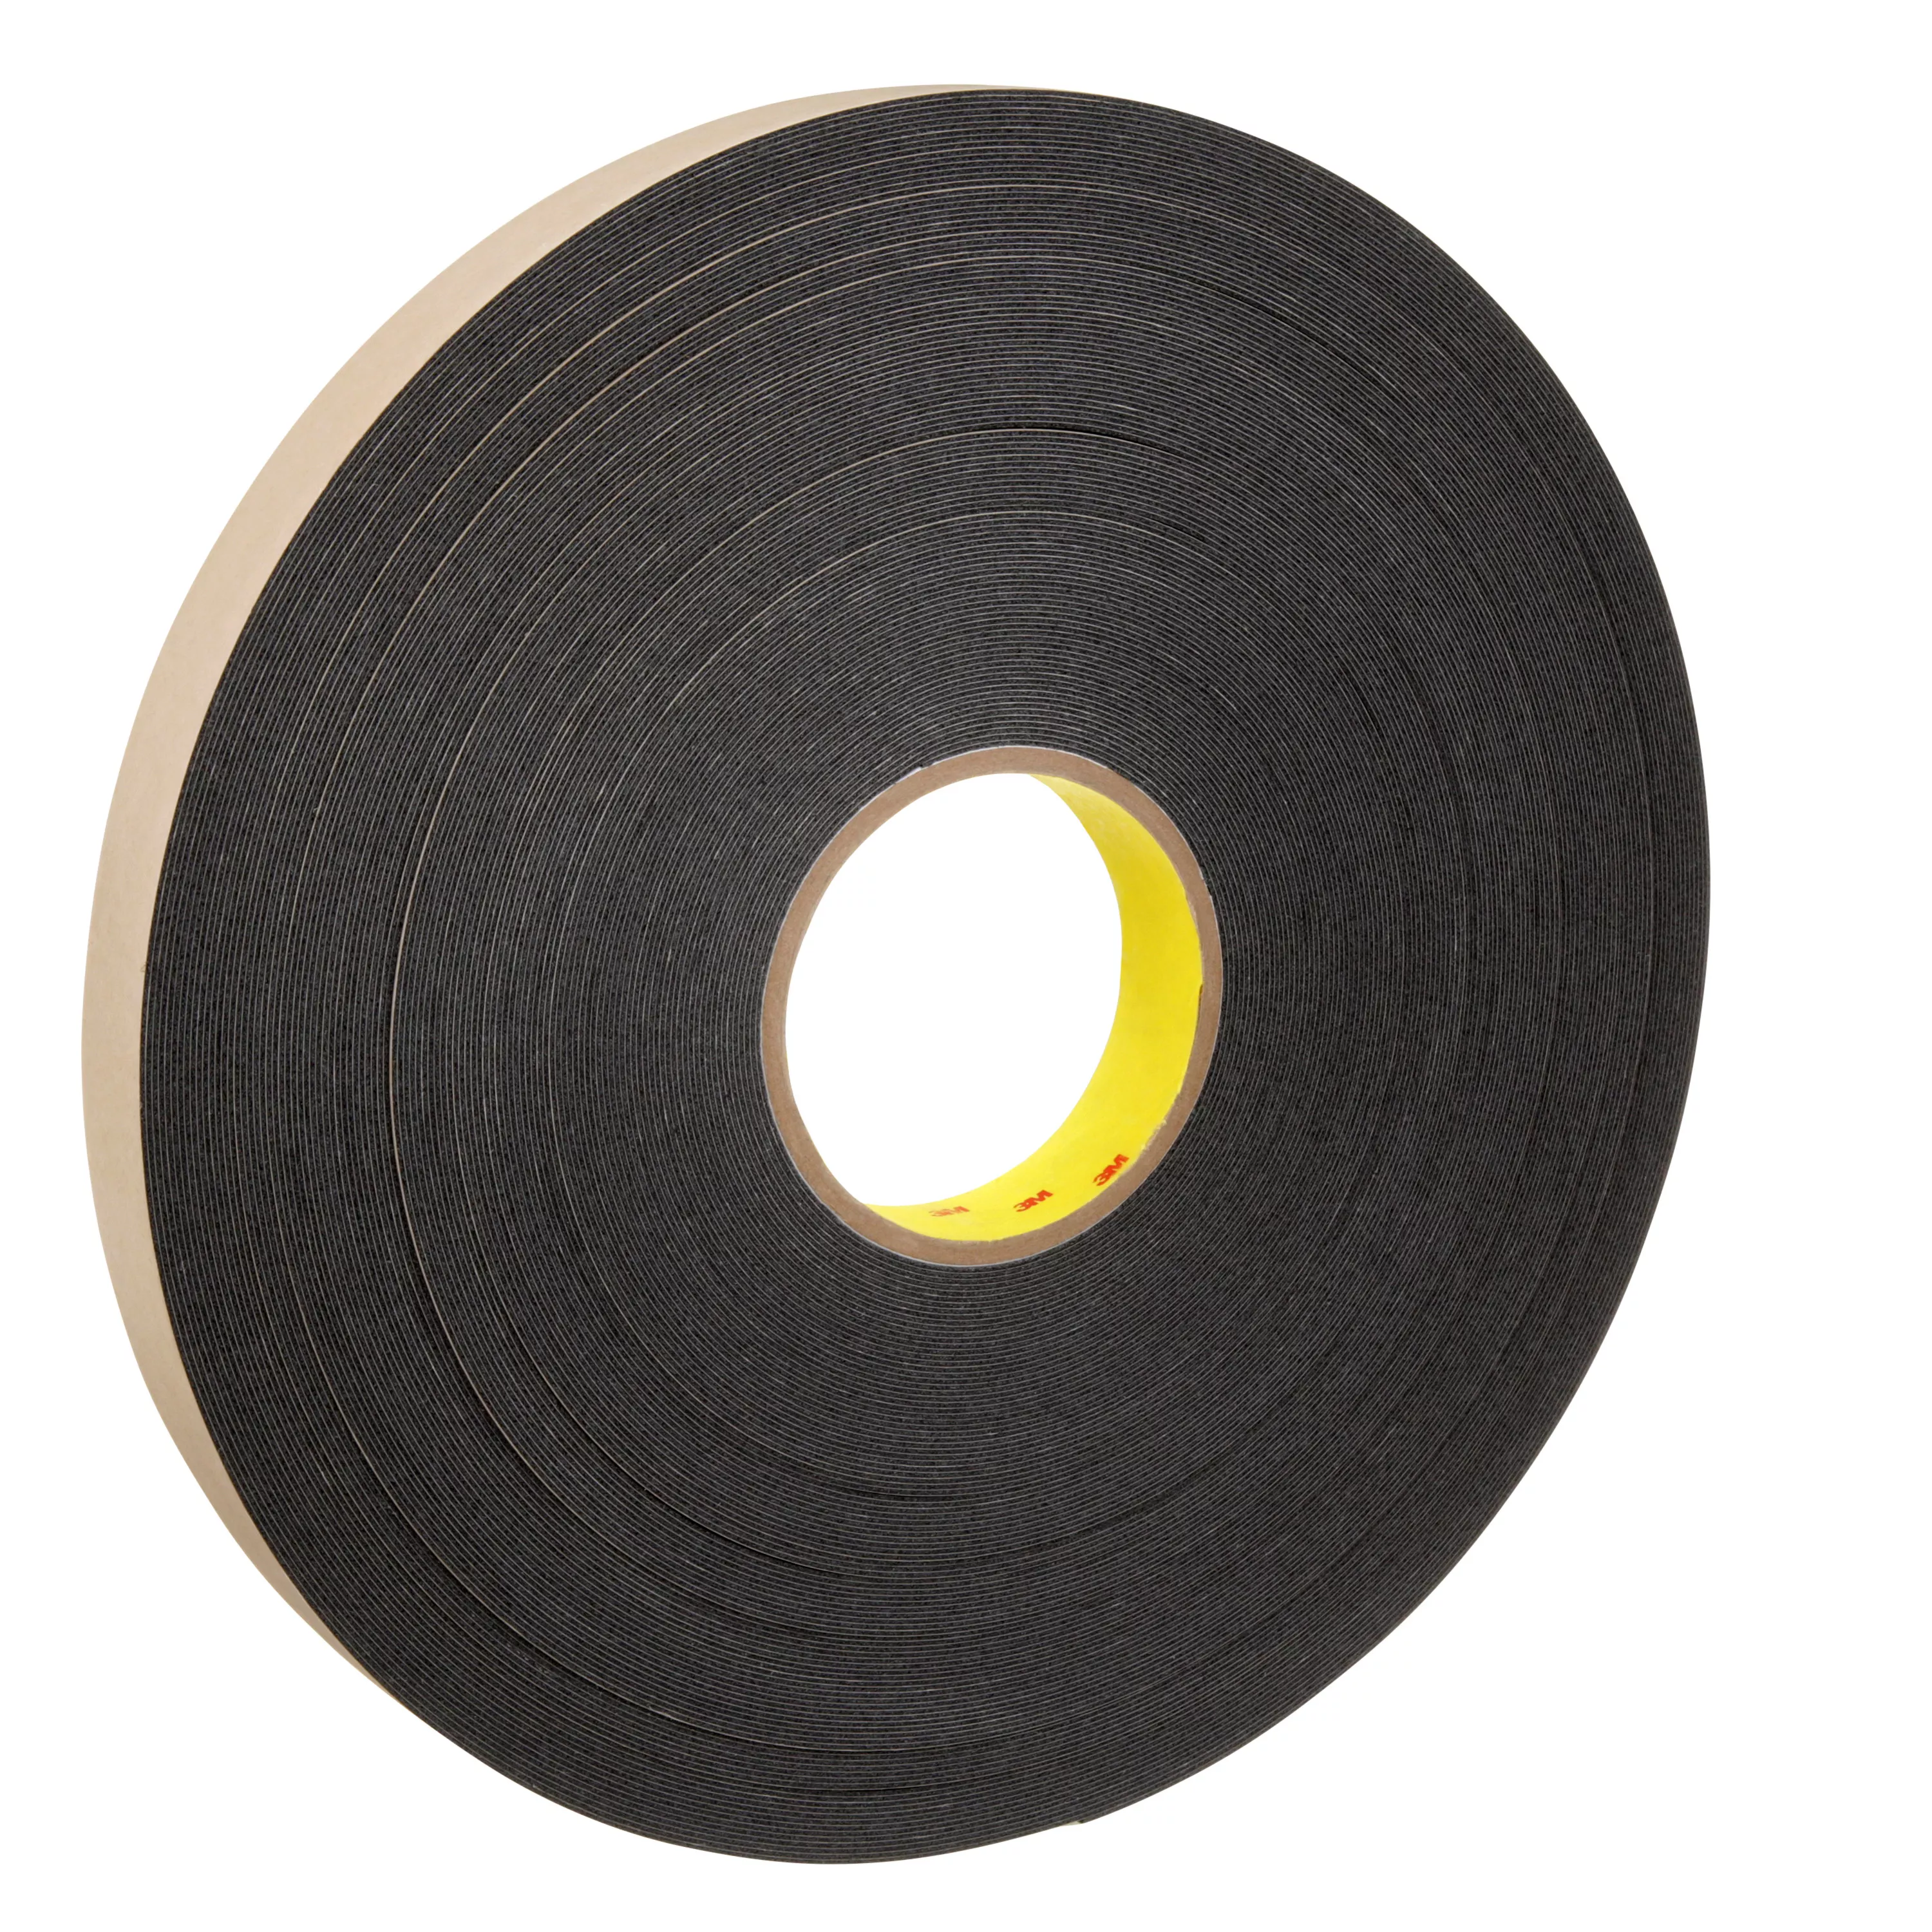 3M™ Double Coated Polyethylene Foam Tape 4492B, Black, 1 in x 72 yd, 31
mil, 9 Roll/Case